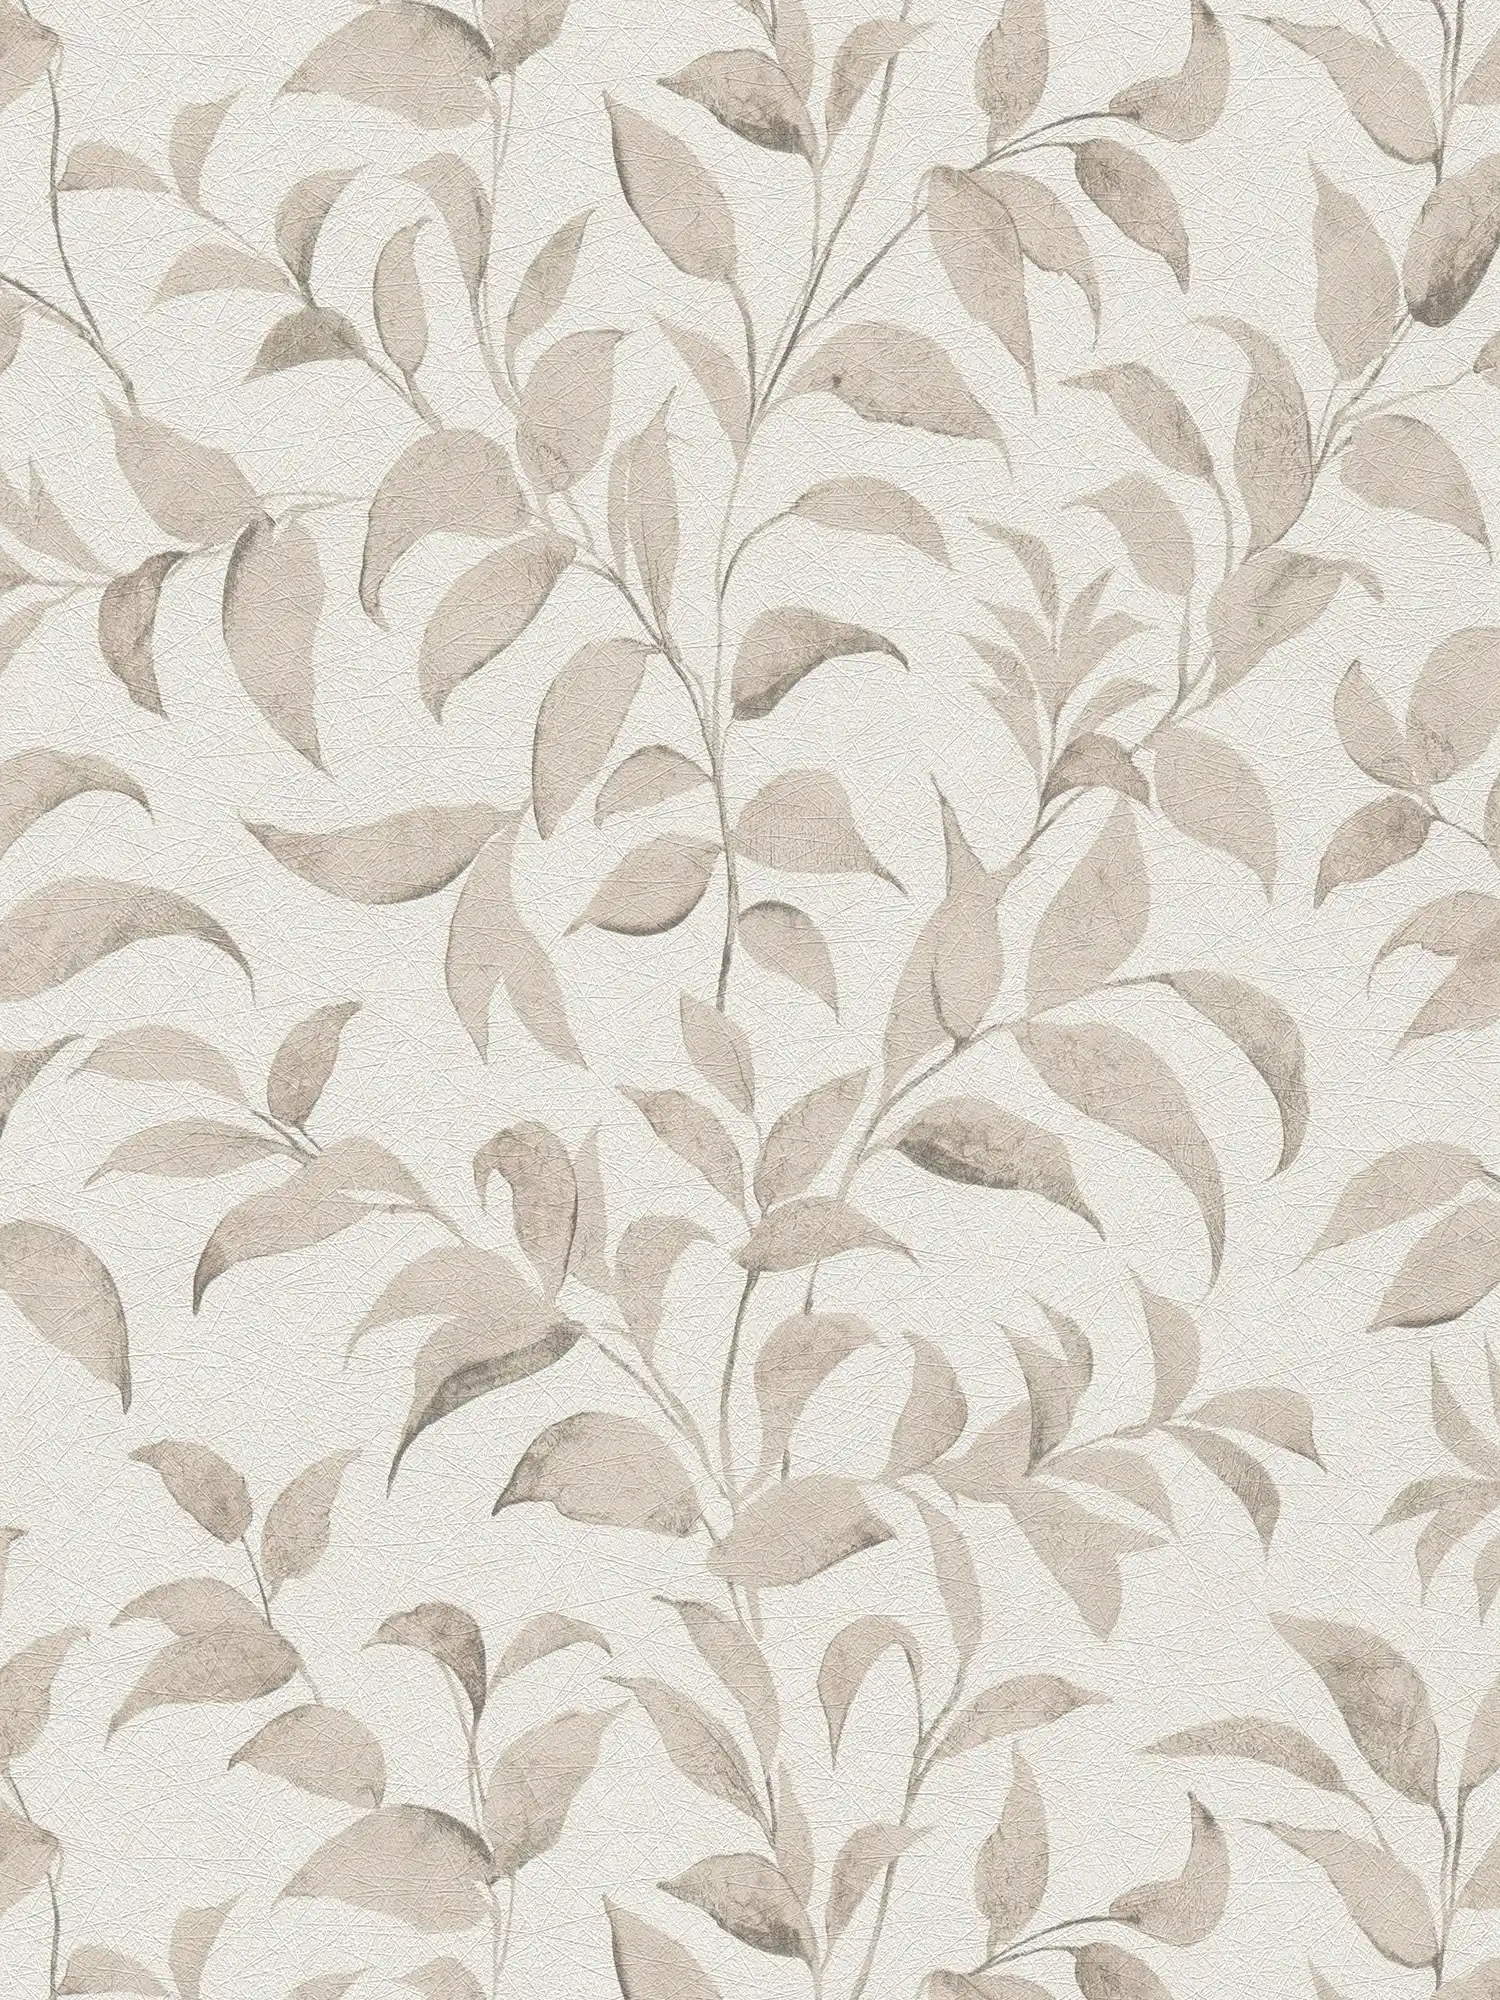 Bloemrijkbladeren behang structuur glinstering - wit, grijs, beige
